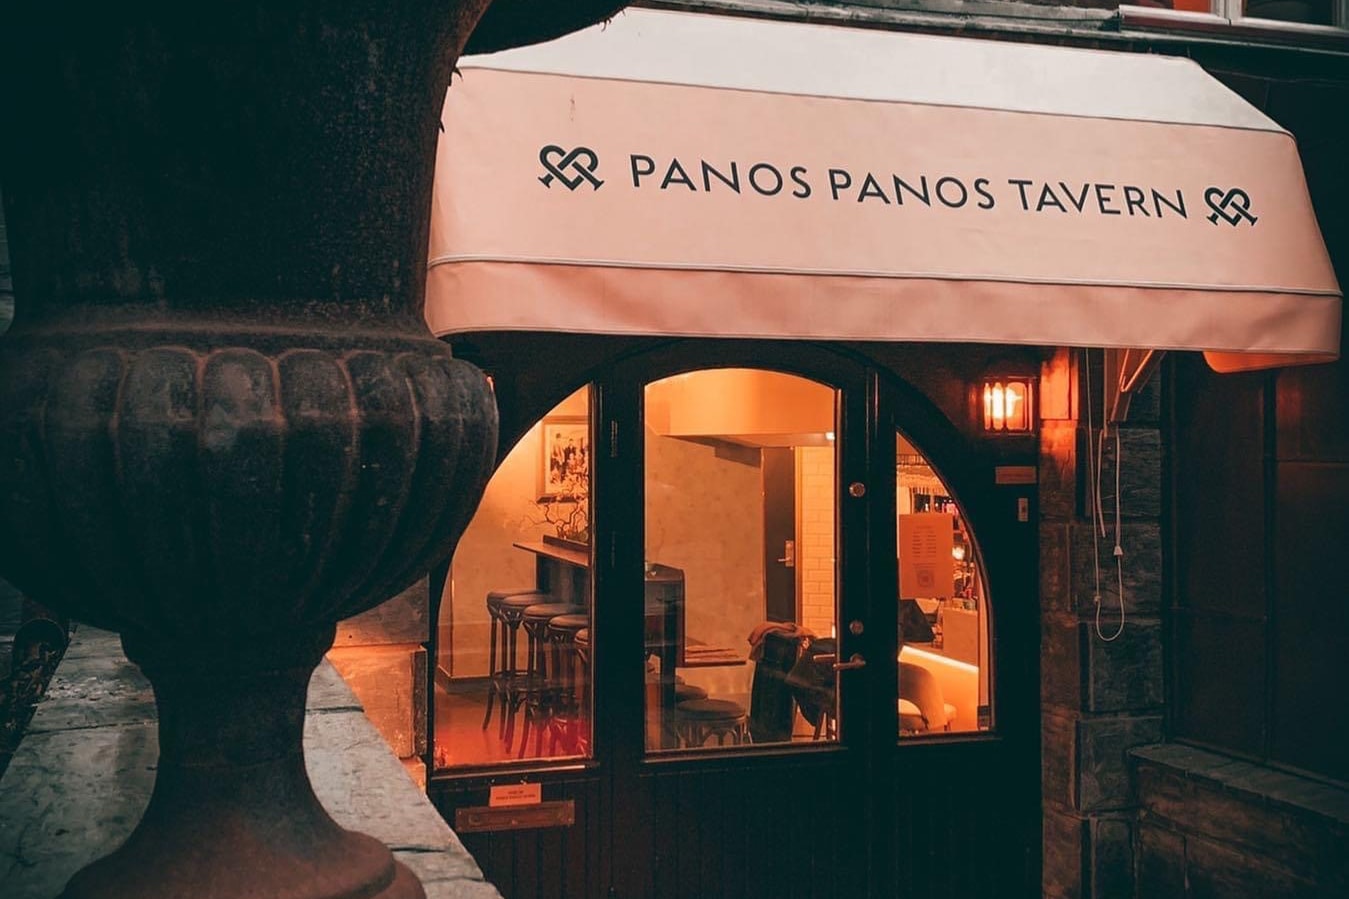 Grekisk trerätters middag hos Panos Panos Tavern i Lorensberg (9 av 14) (10 av 14)